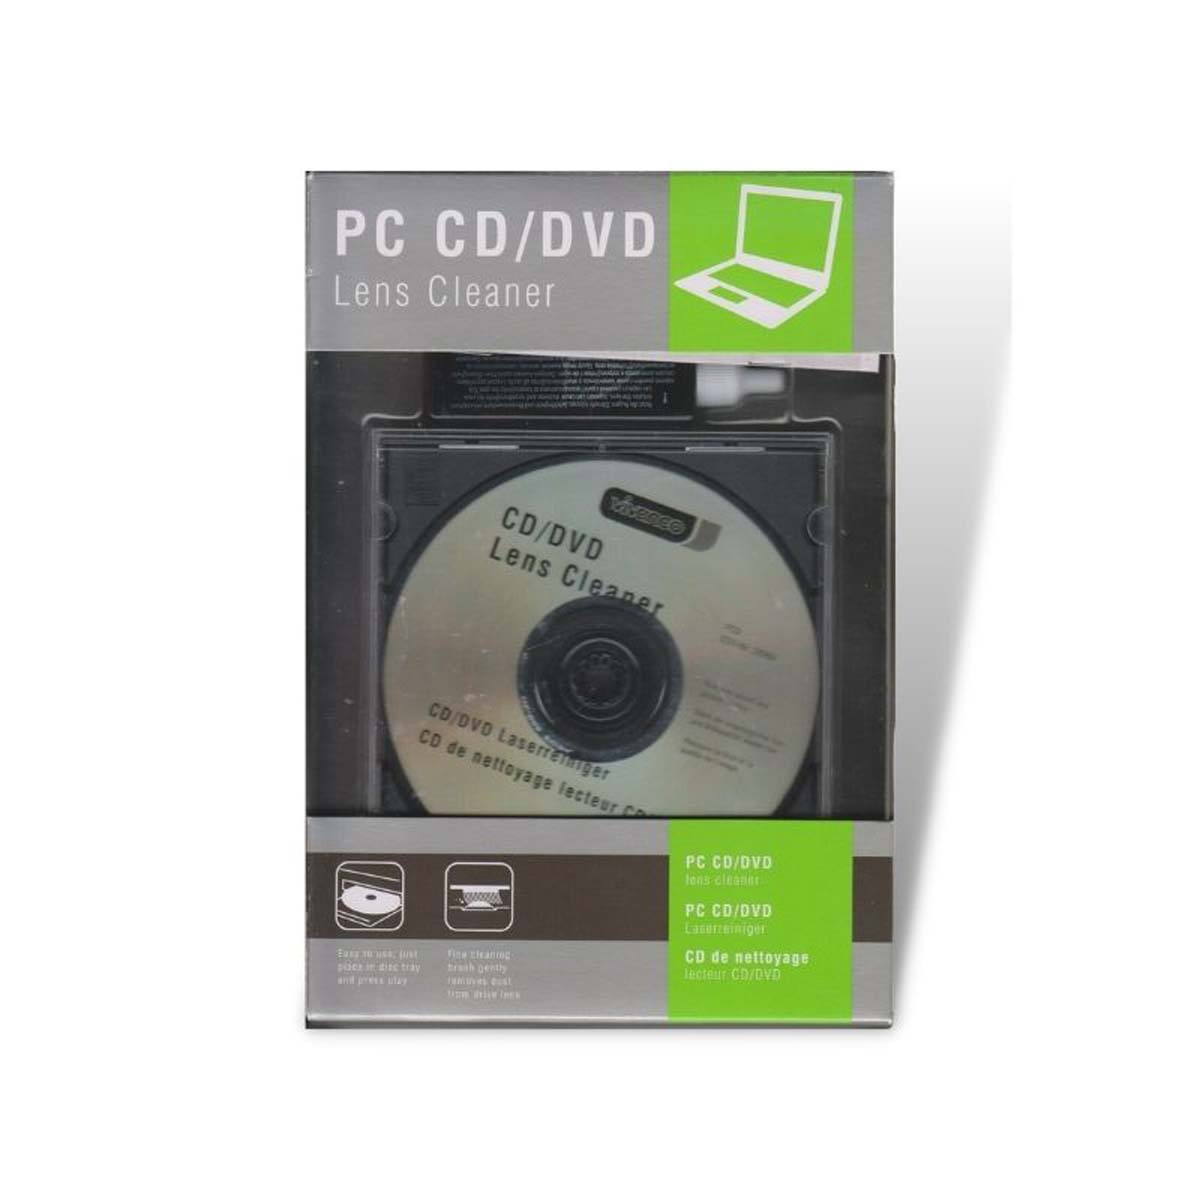 für CD, Laserreiniger 39753 Transparent PC, VIVANCO DVD,